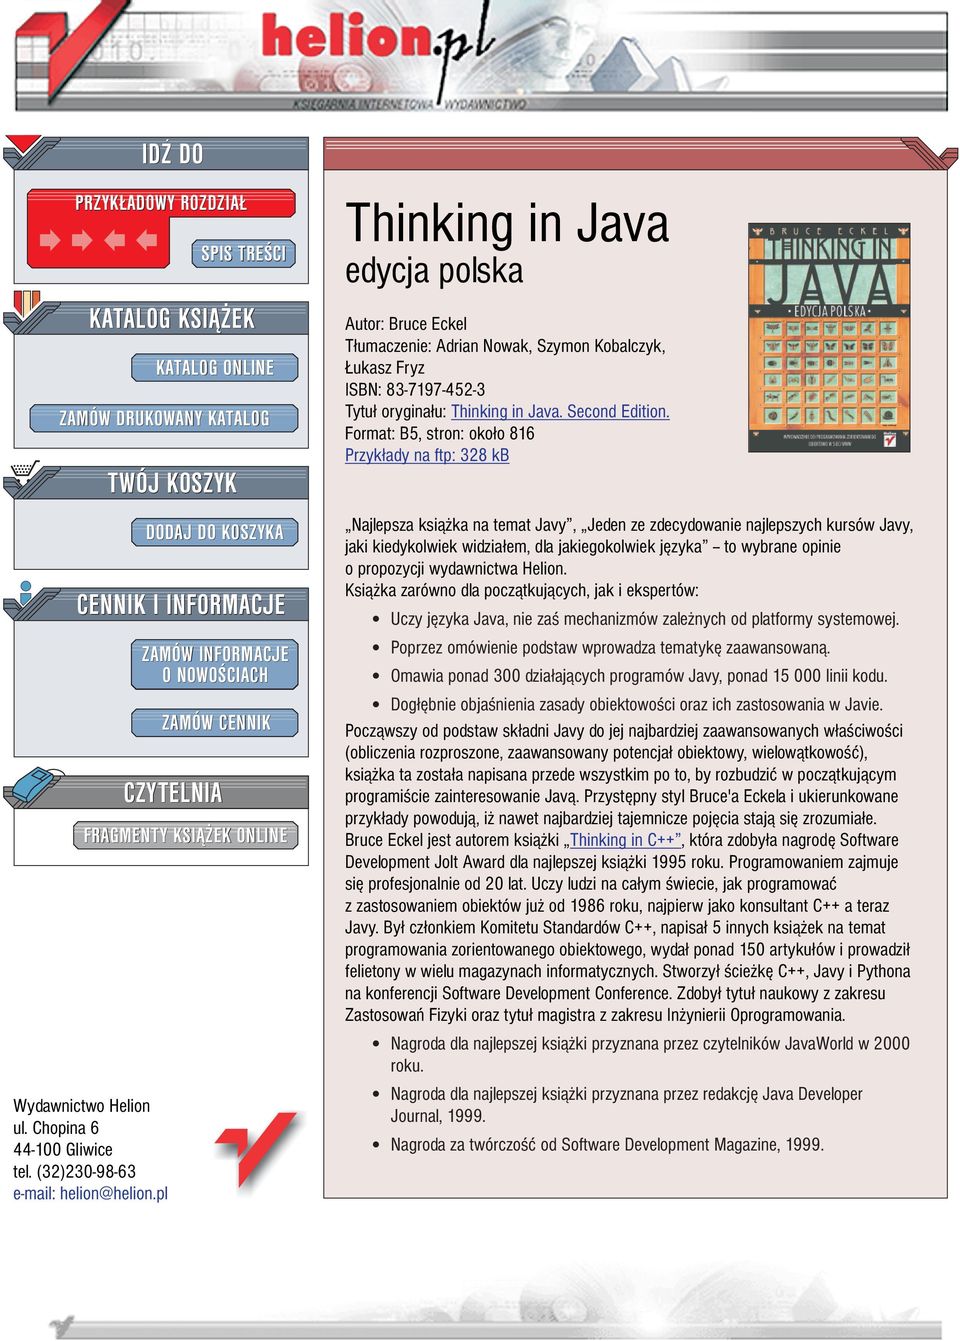 ONLINE Thinking in Java edycja polska Autor: Bruce Eckel T³umaczenie: Adrian Nowak, Szymon Kobalczyk, ukasz Fryz ISBN: 83-7197-452-3 Tytu³ orygina³u: Thinking in Java. Second Edition.